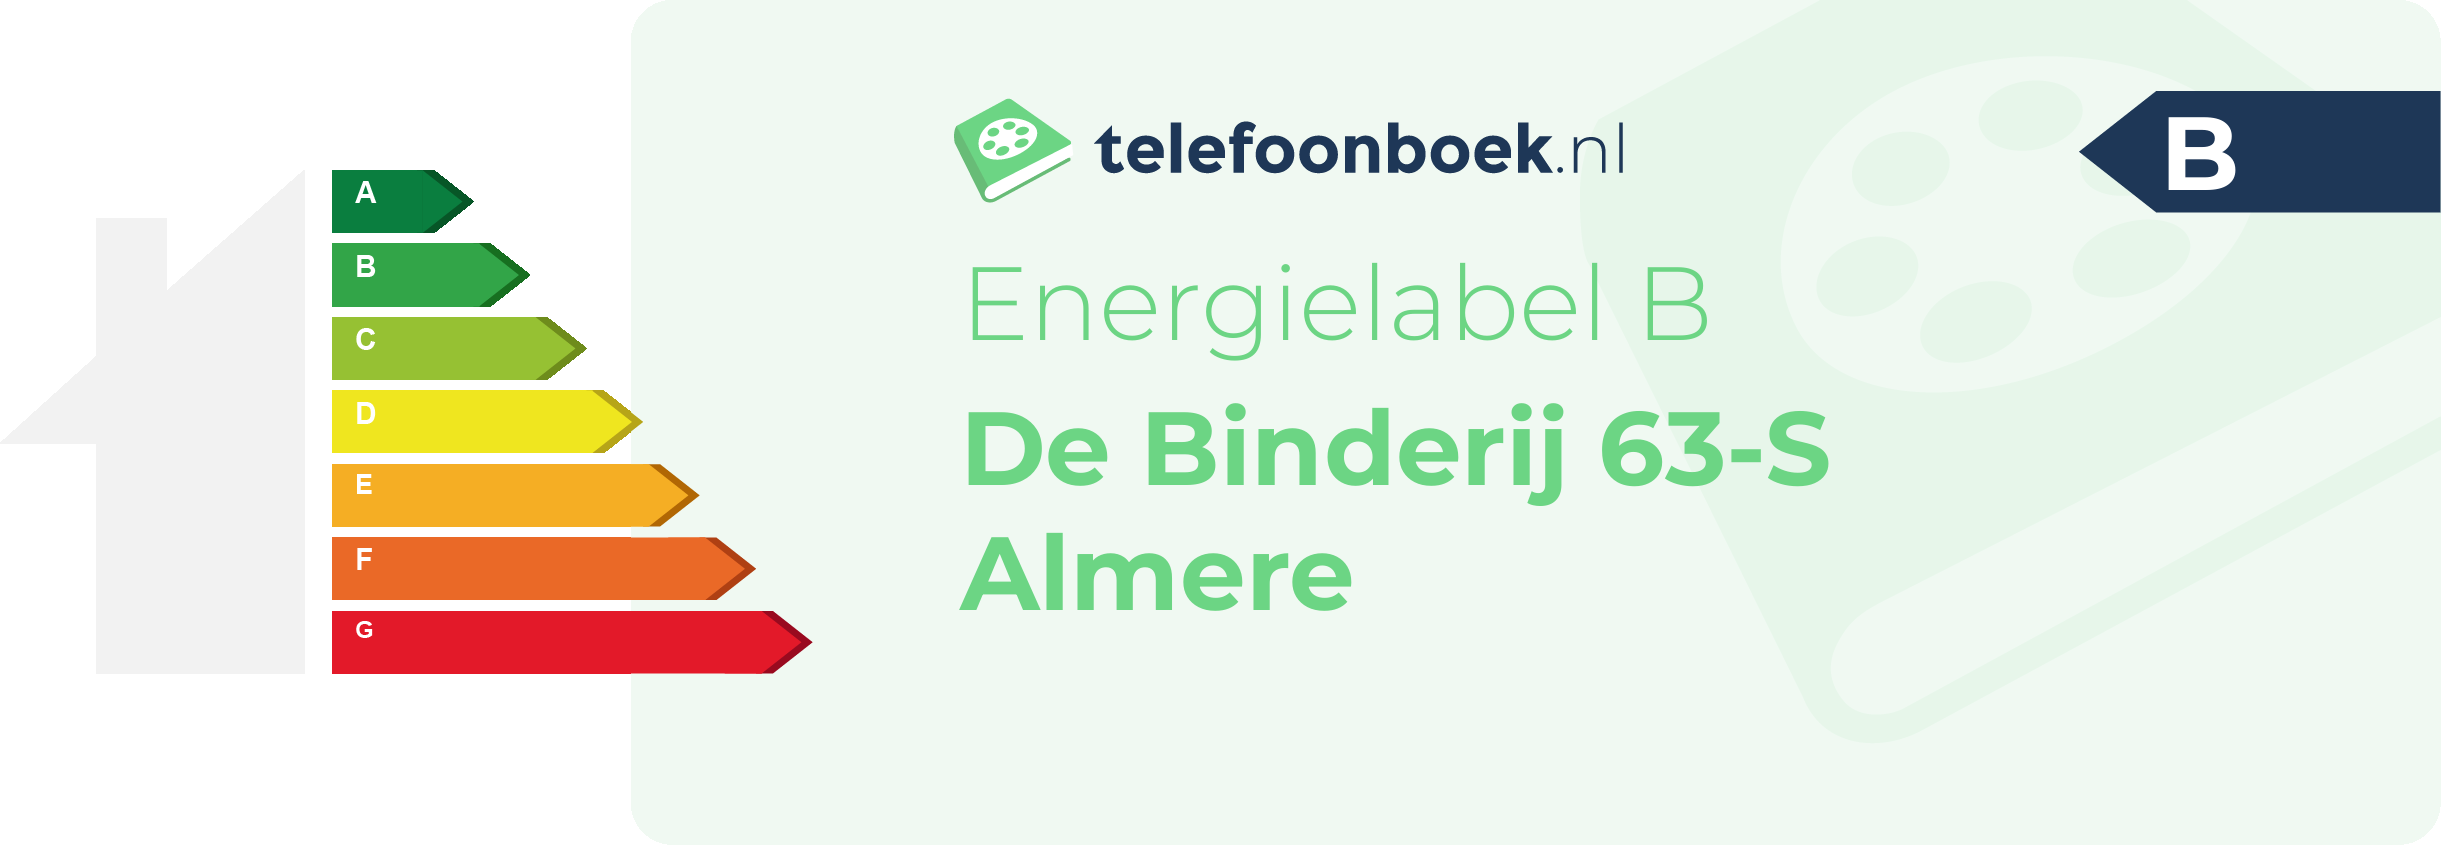 Energielabel De Binderij 63-S Almere